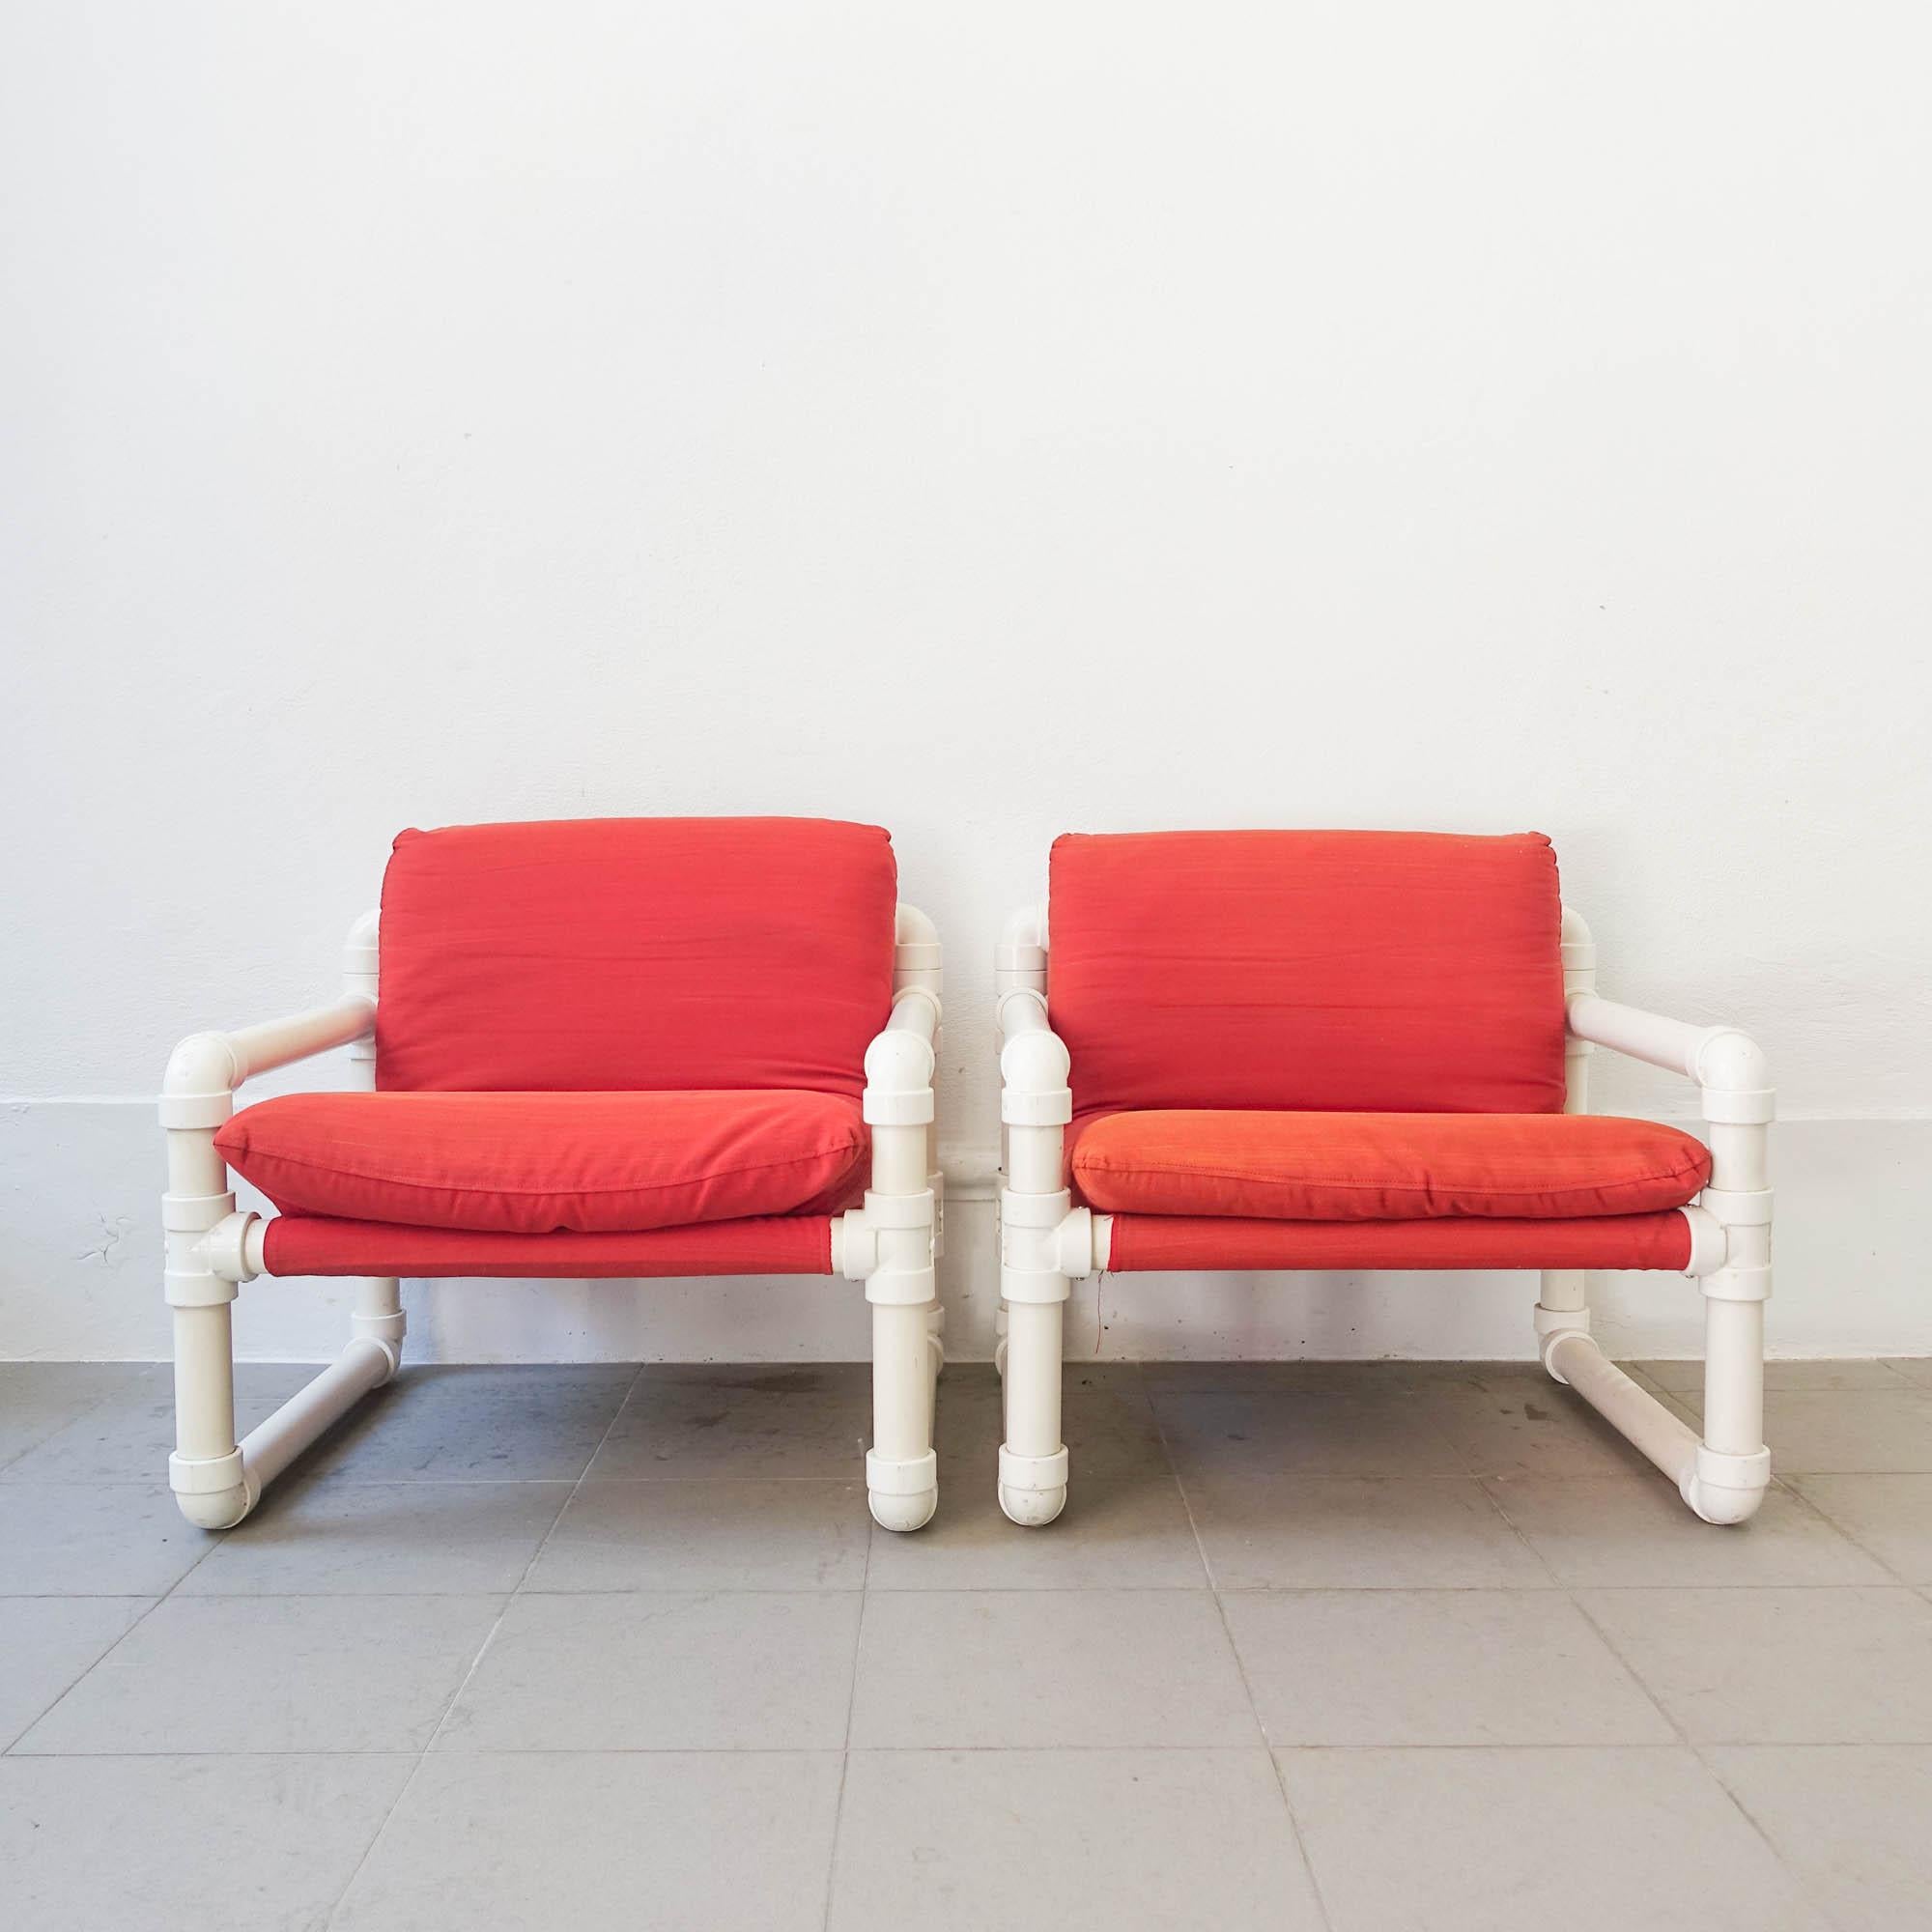 Cette paire de fauteuils, modèle Tub-Kit, a été conçue par João Américo Pinto de Oliveira pour Altamira et Plimat - Marinha Grande, au Portugal en 1984. Il s'agit d'une conception unique dont la structure est constituée de tubes en plastique.